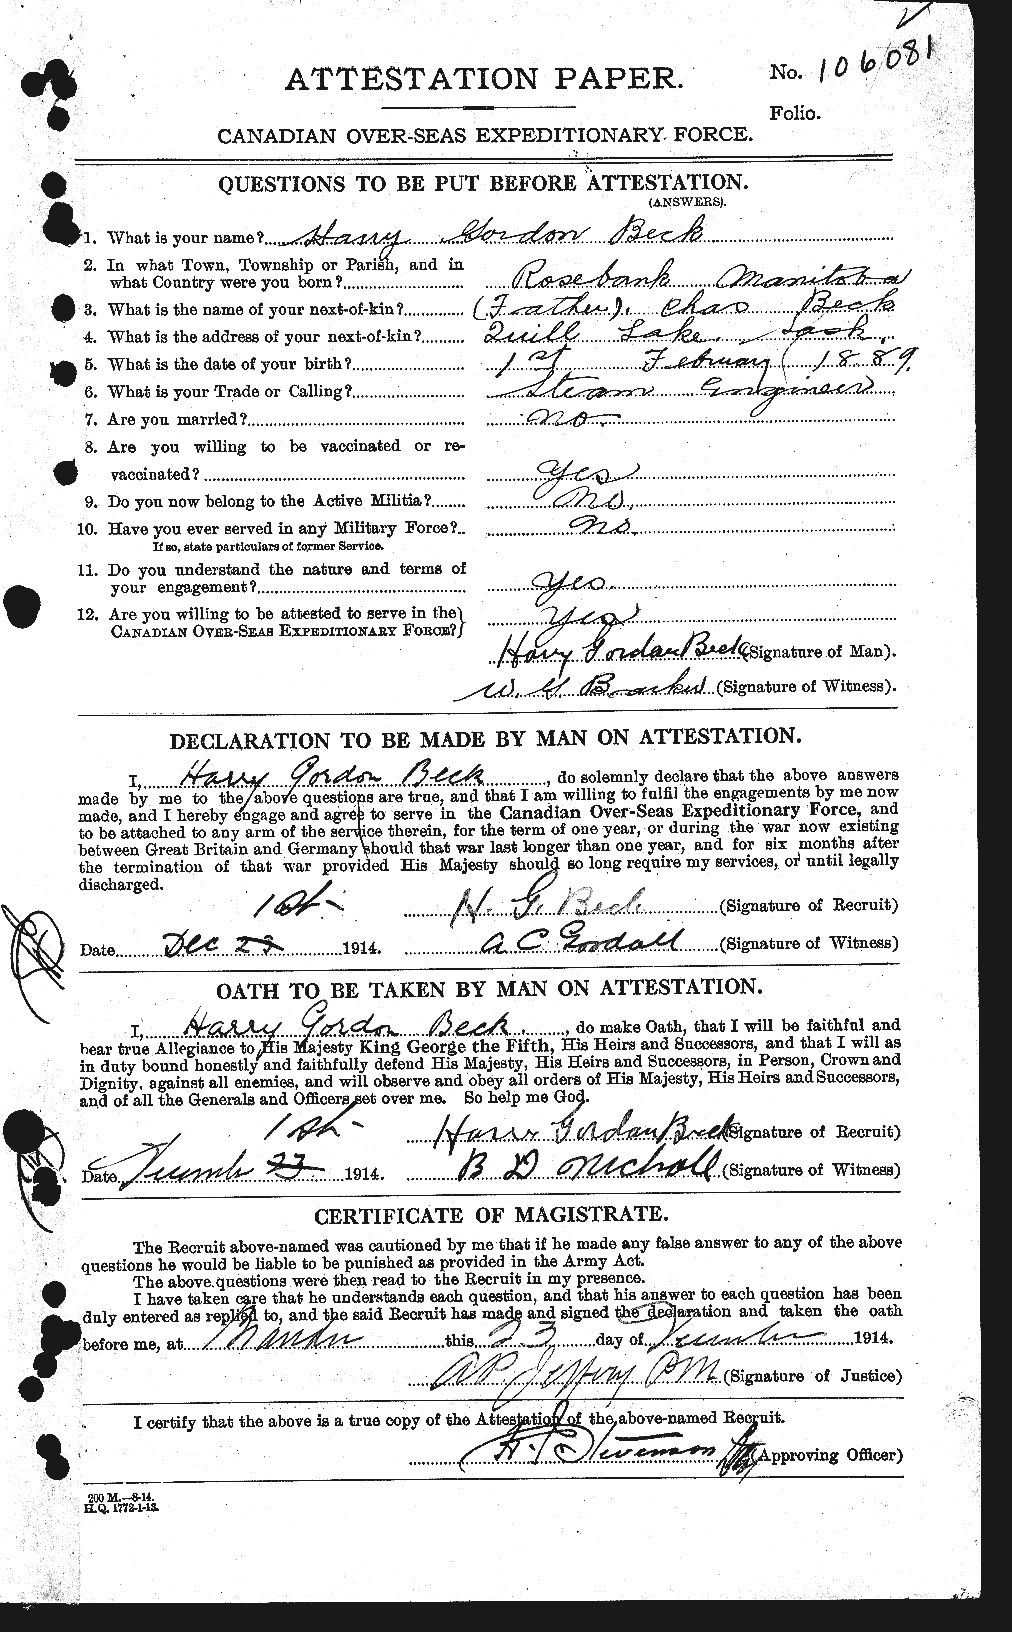 Dossiers du Personnel de la Première Guerre mondiale - CEC 232127a